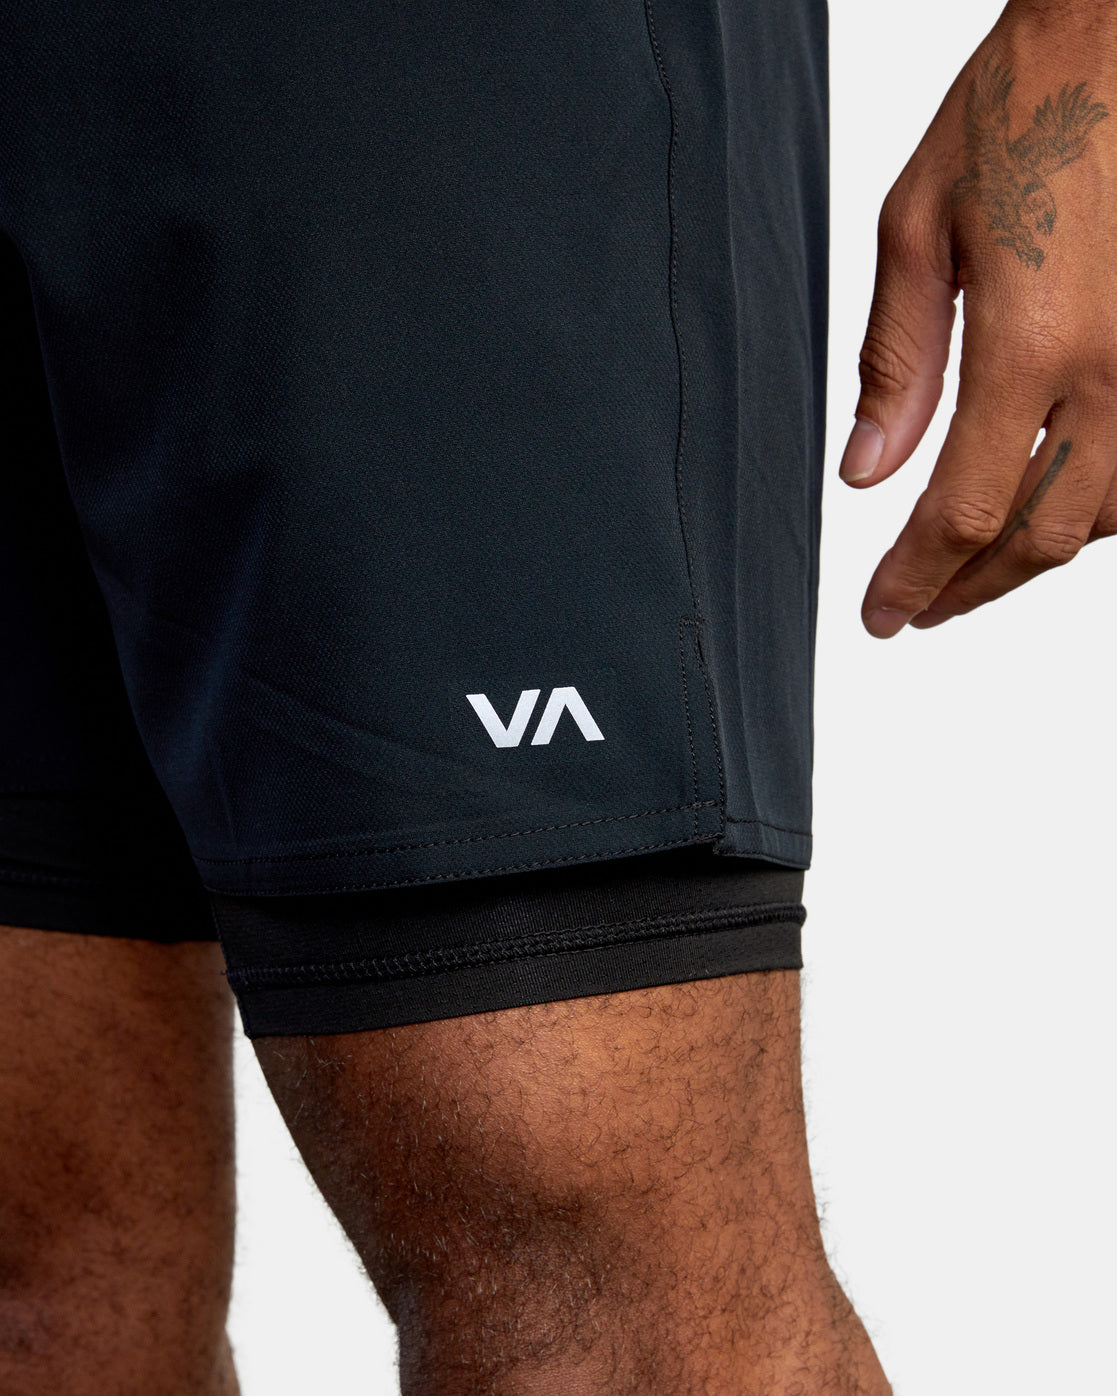 RVCA Yogger Train 2-in-1 Shorts